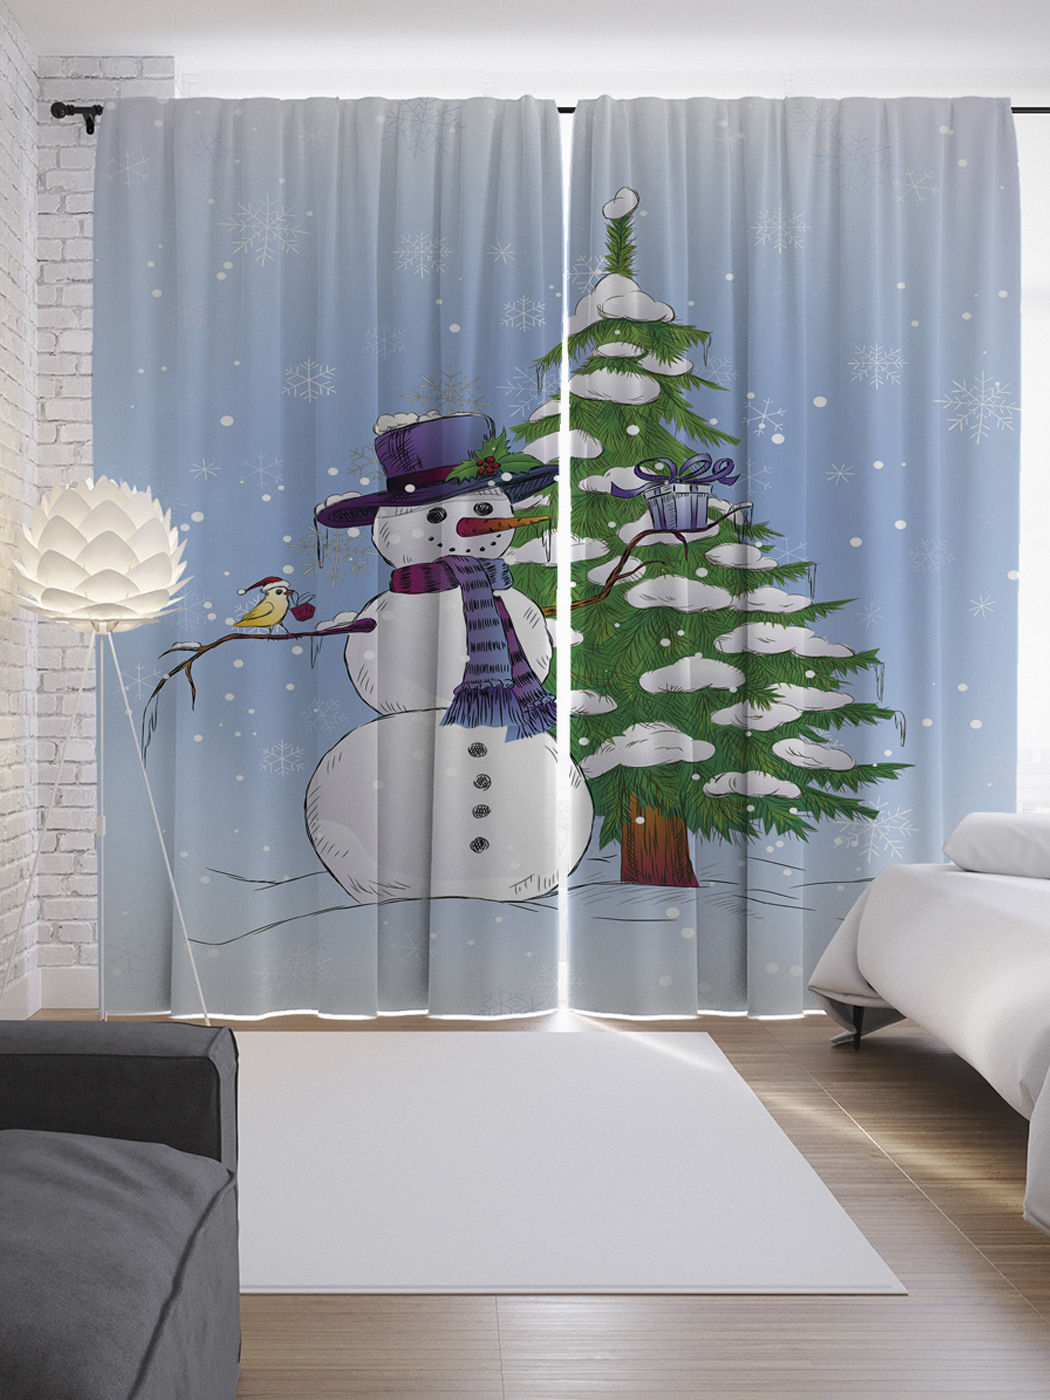 Сатиновые шторы с изображением дружелюбного снеговика размером 290х265 см.